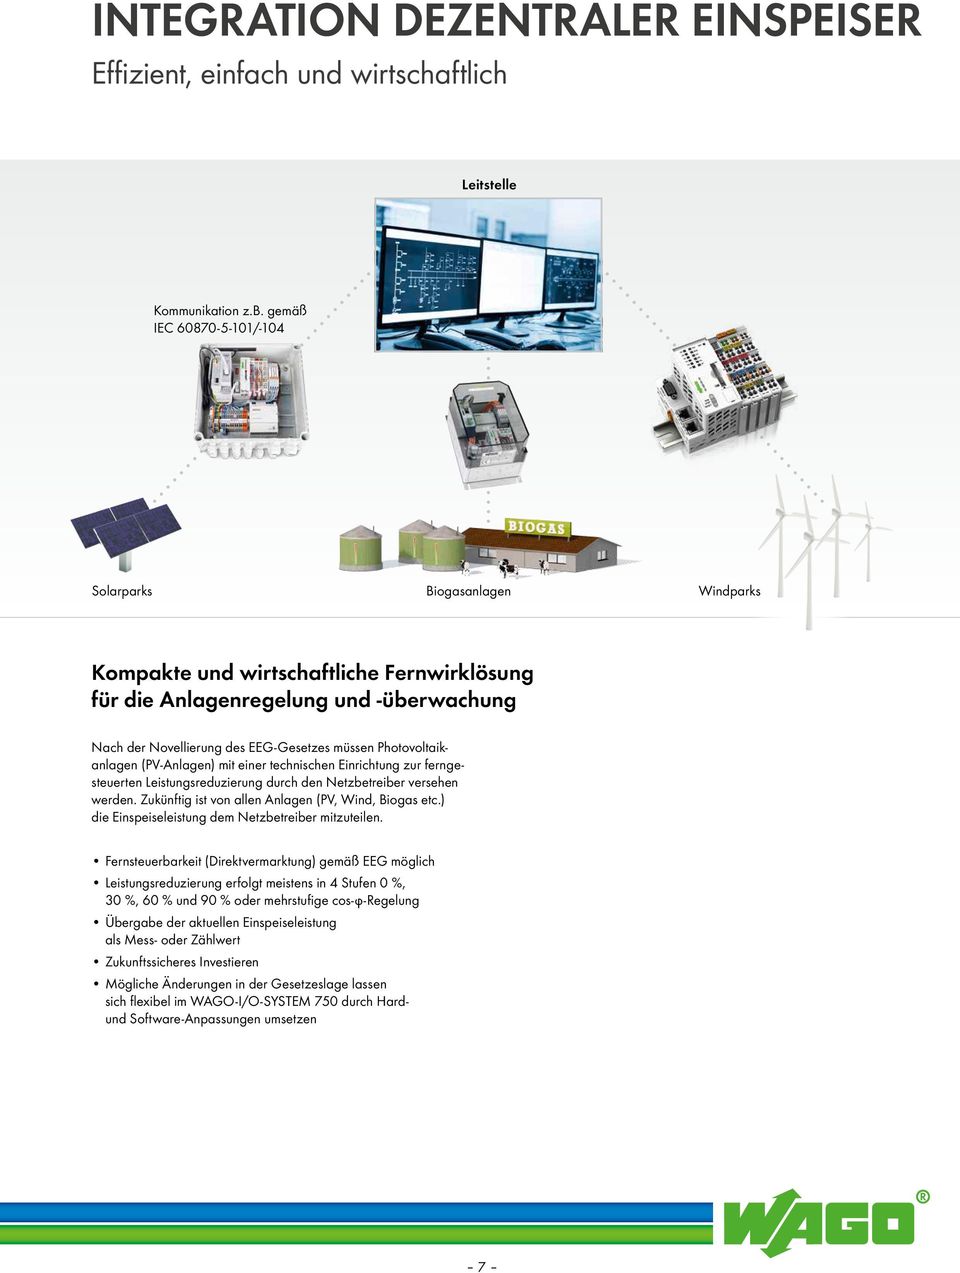 Photovoltaikanlagen (PV-Anlagen) mit einer technischen Einrichtung zur ferngesteuerten Leistungsreduzierung durch den Netzbetreiber versehen werden.